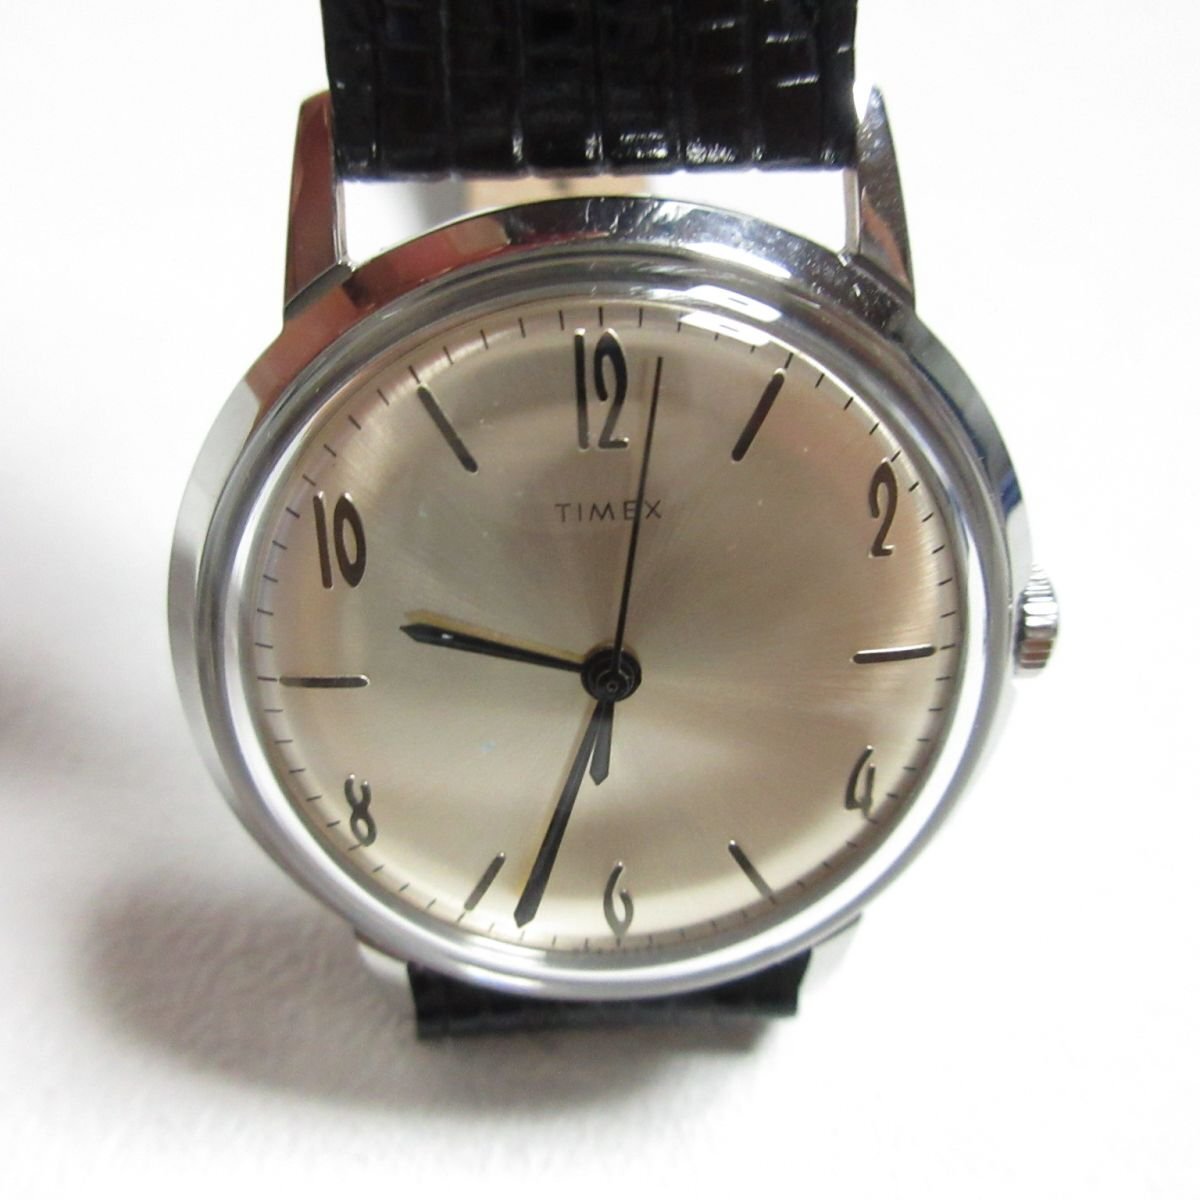  прекрасный товар TIMEX Timex MARLINma- Lynn кожаный ремень механический завод наручные часы часы переиздание модель 34mm TW2R47900 *